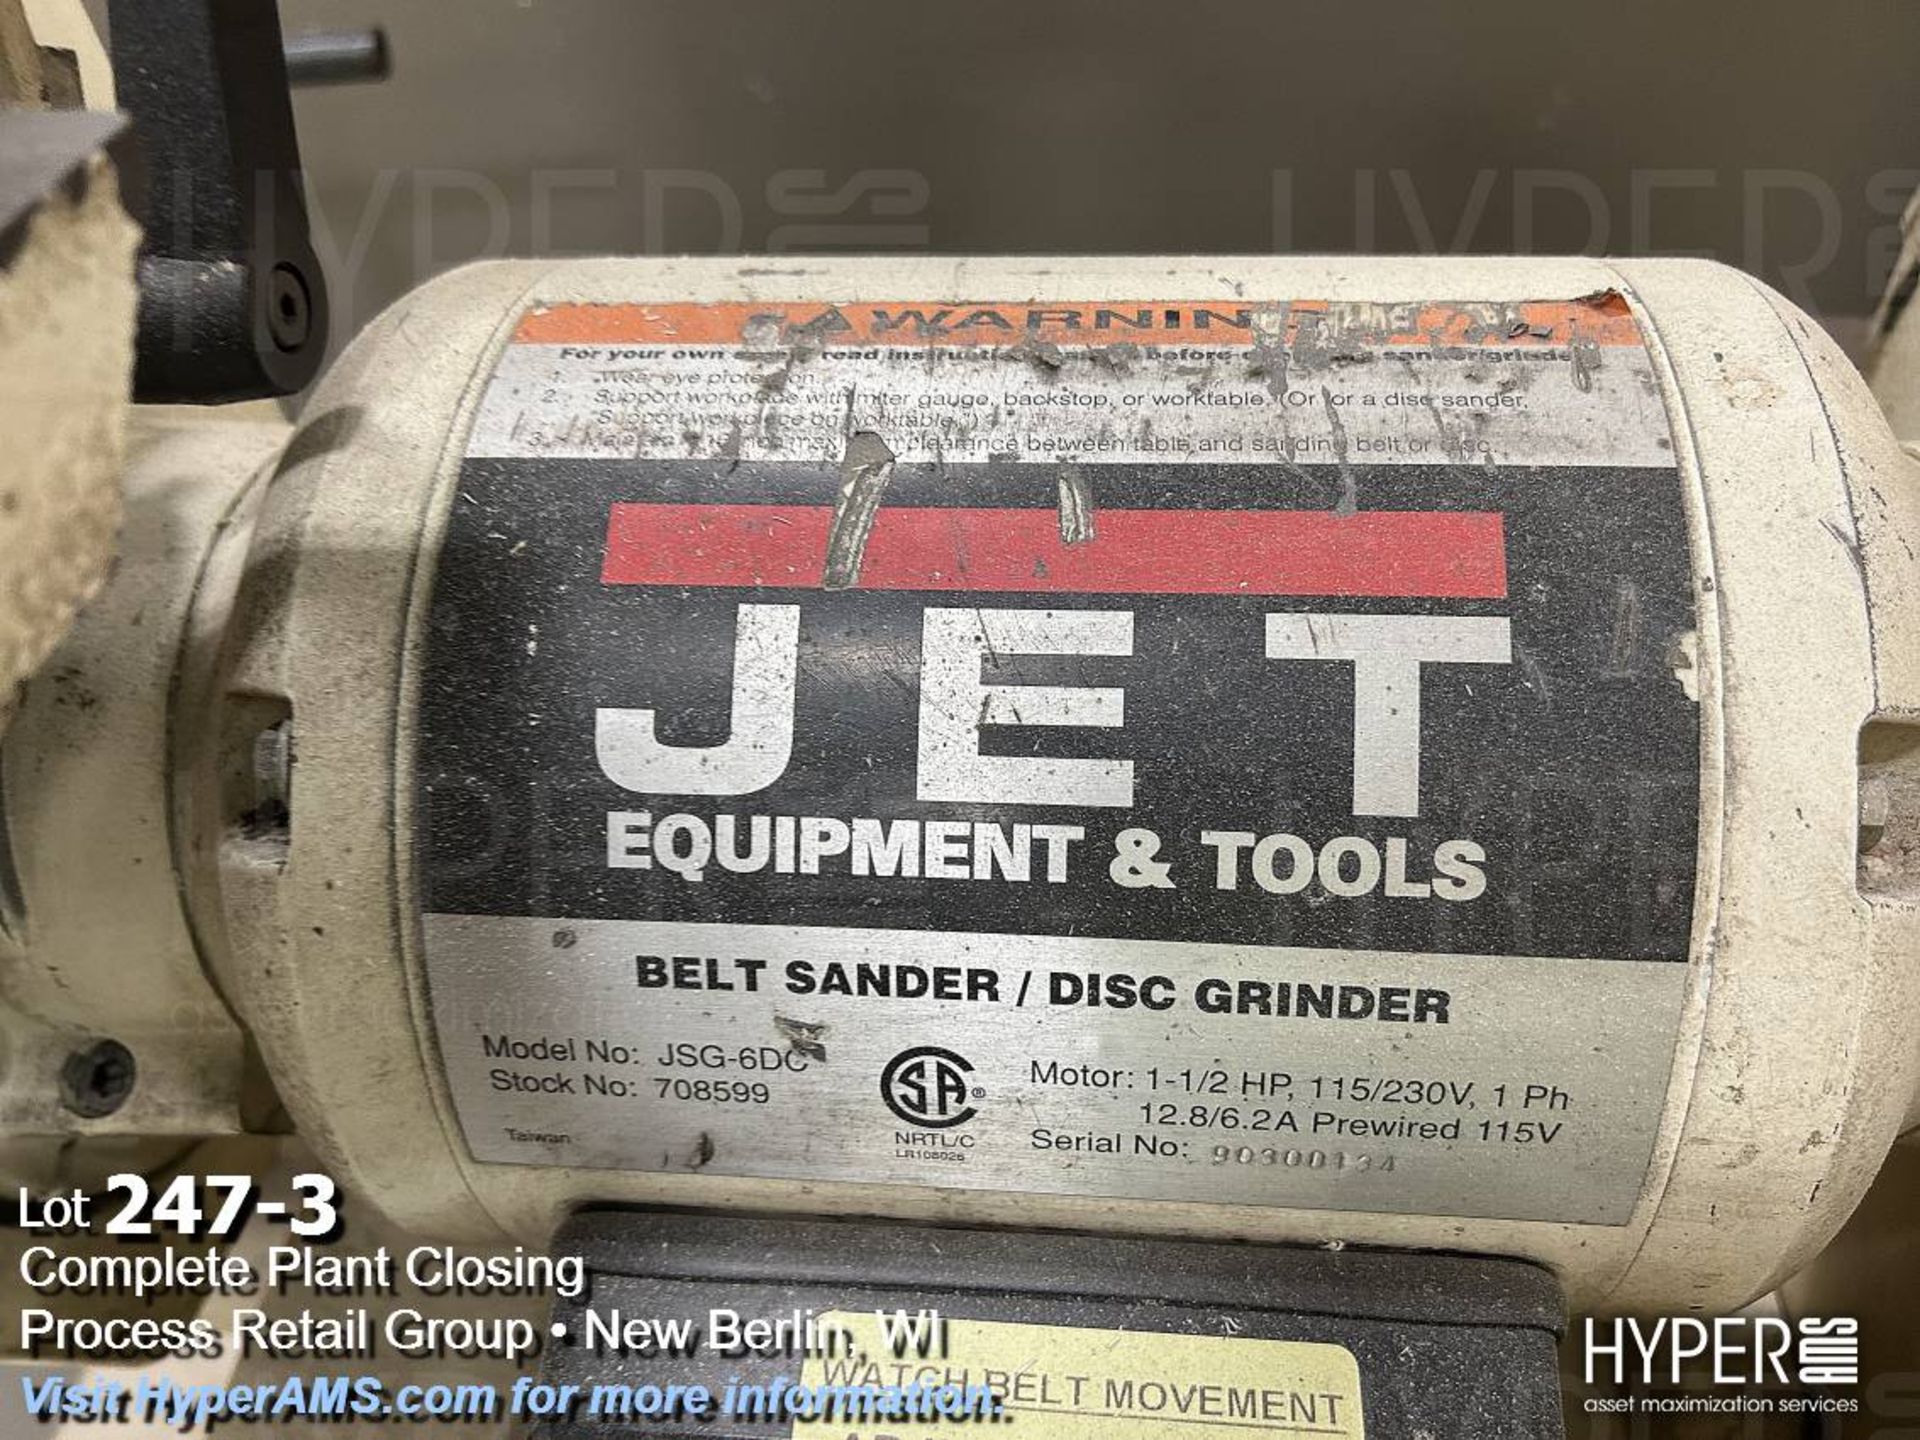 Jet belt sander/Disc grinder - Image 3 of 4